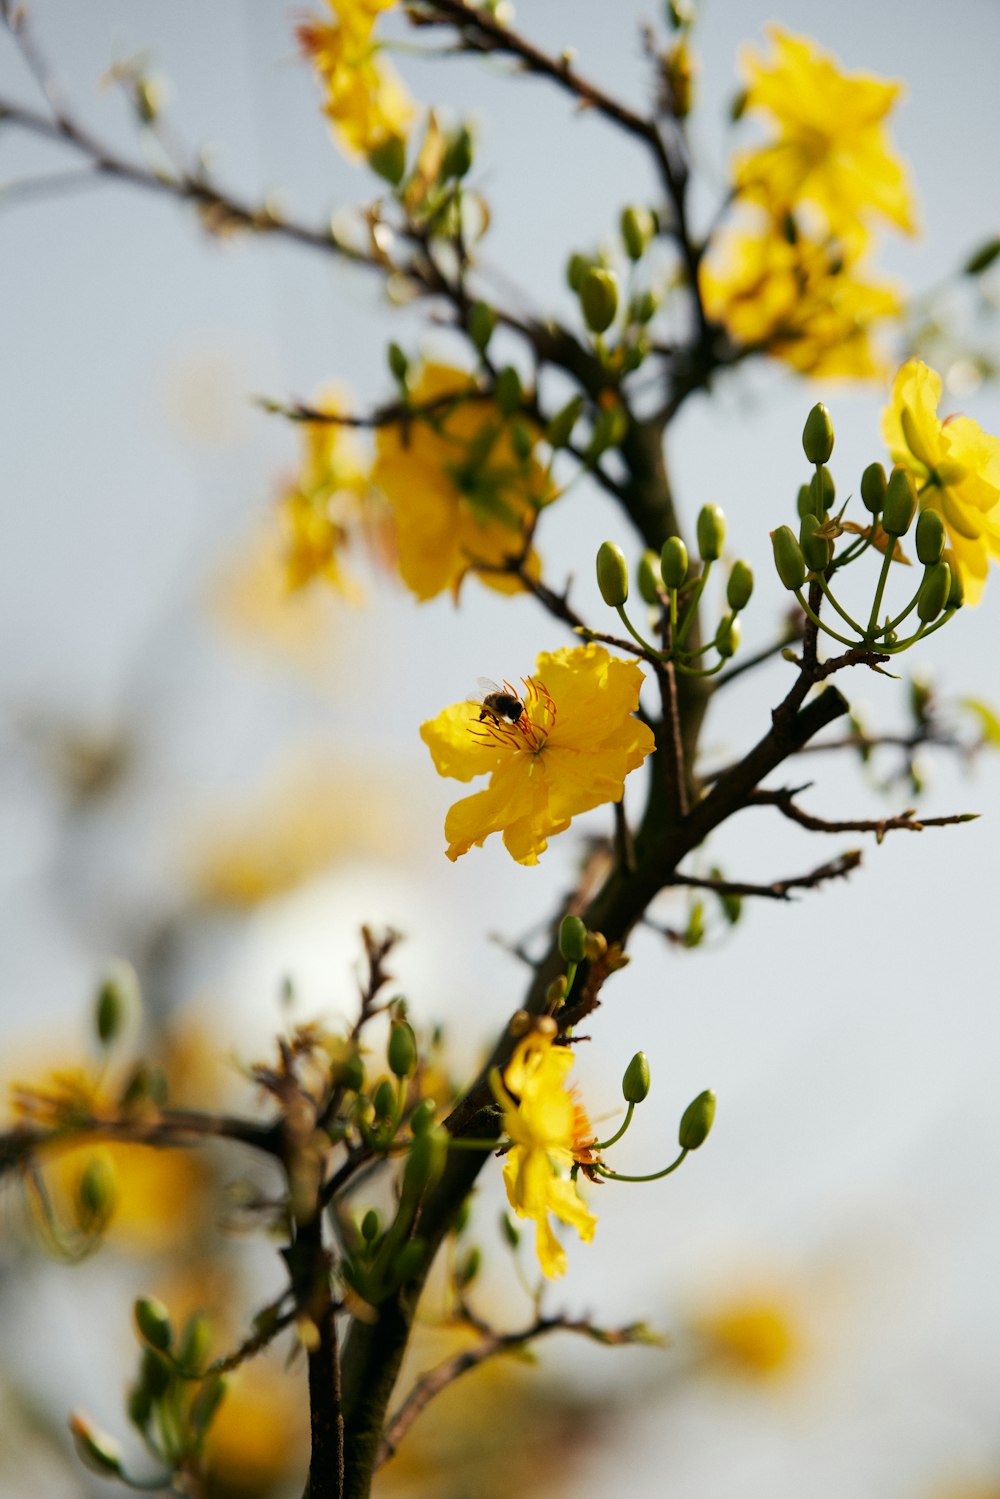 青空に黄色い花が咲く枝